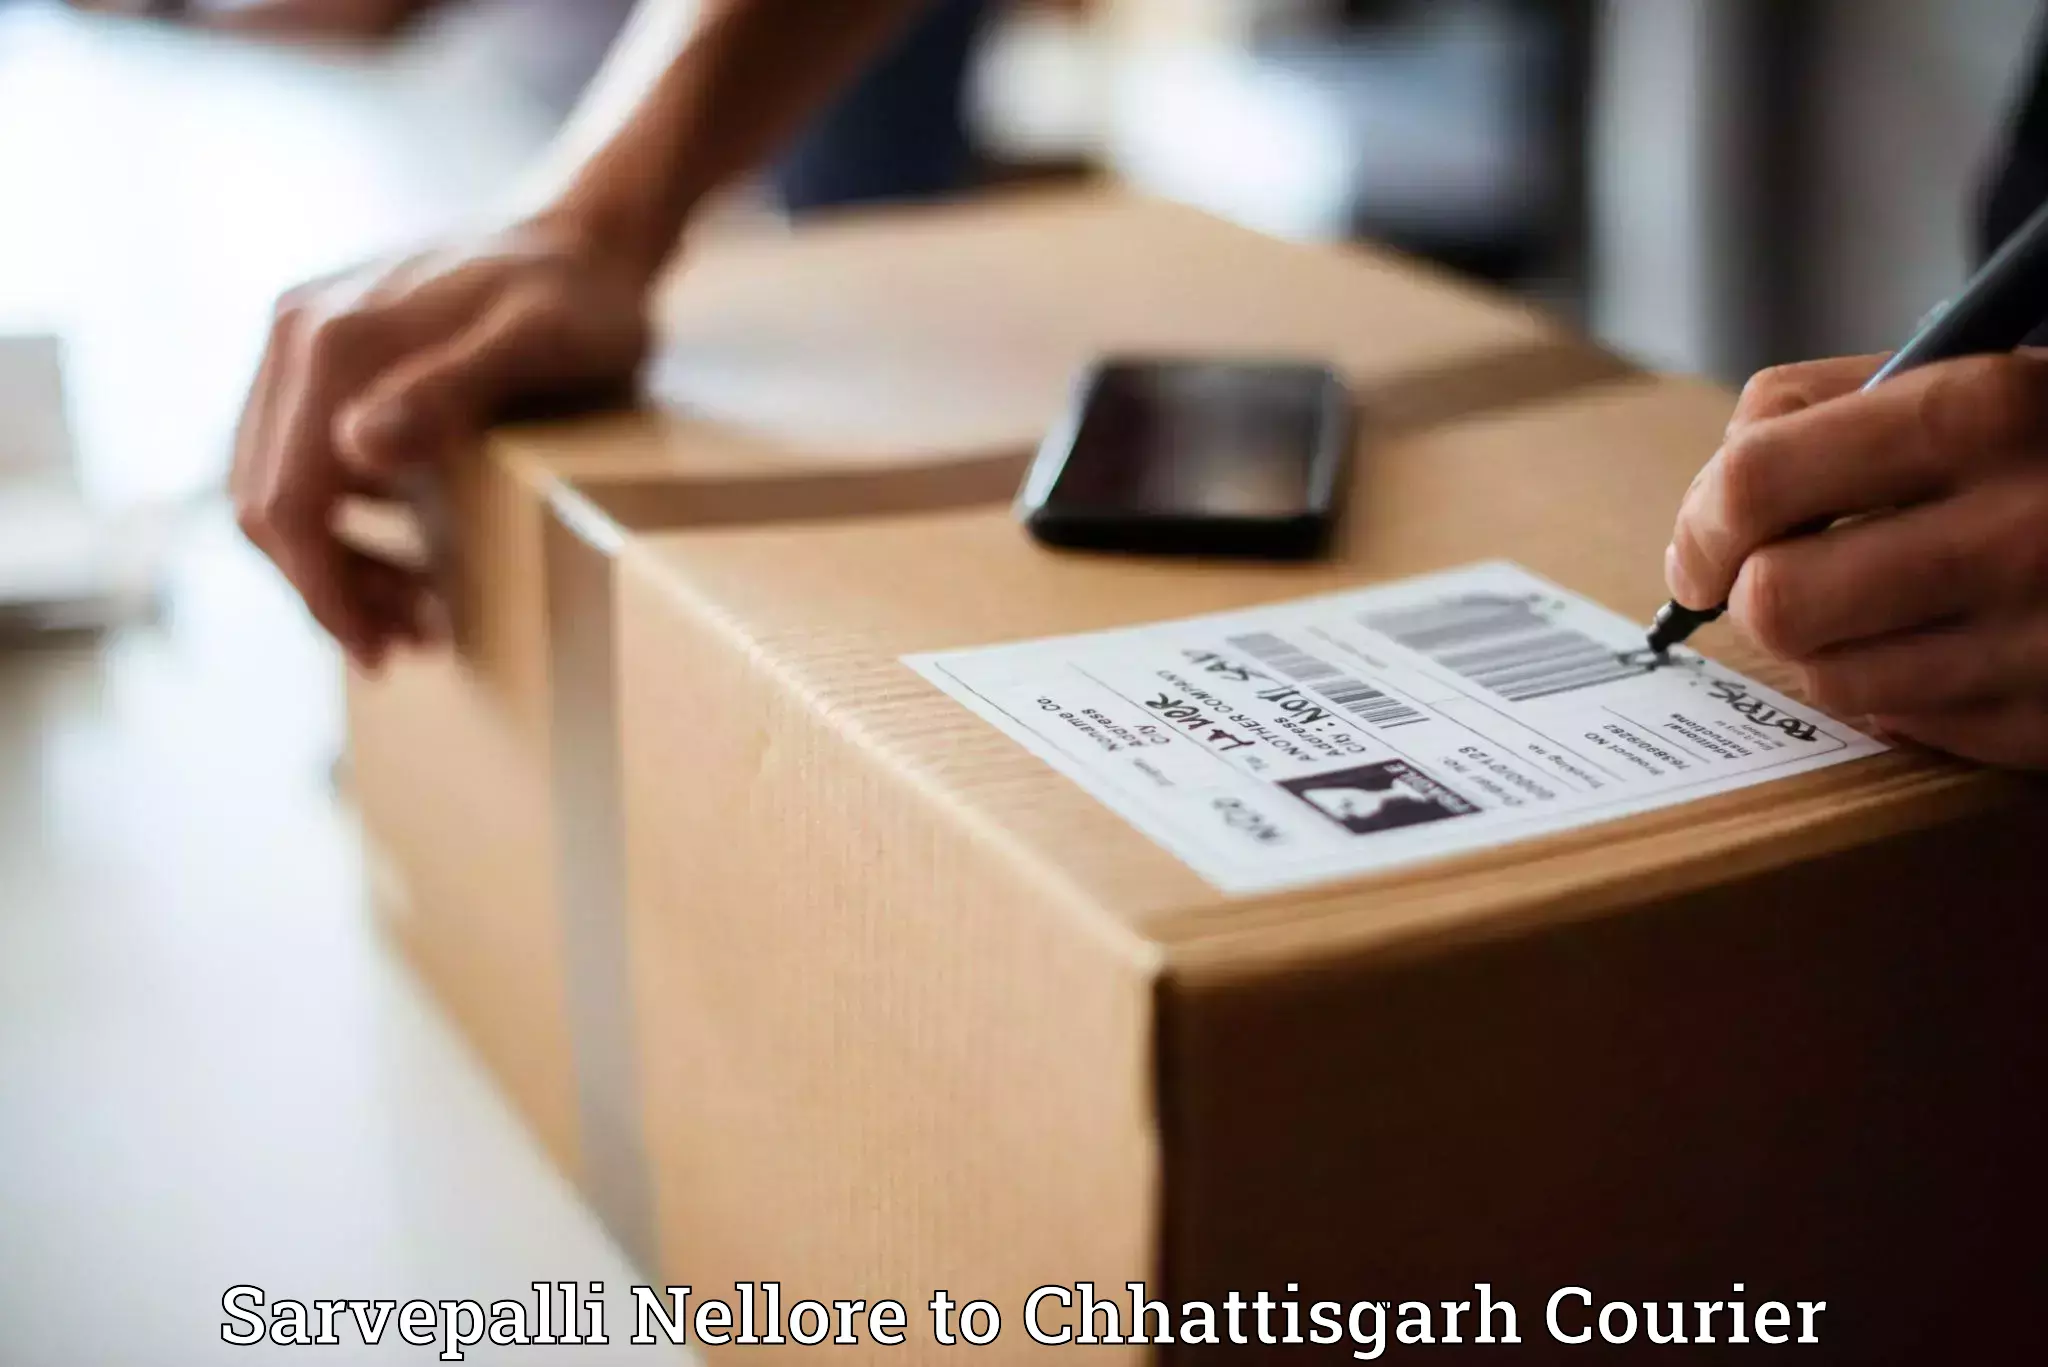 Cash on delivery service Sarvepalli Nellore to Surguja